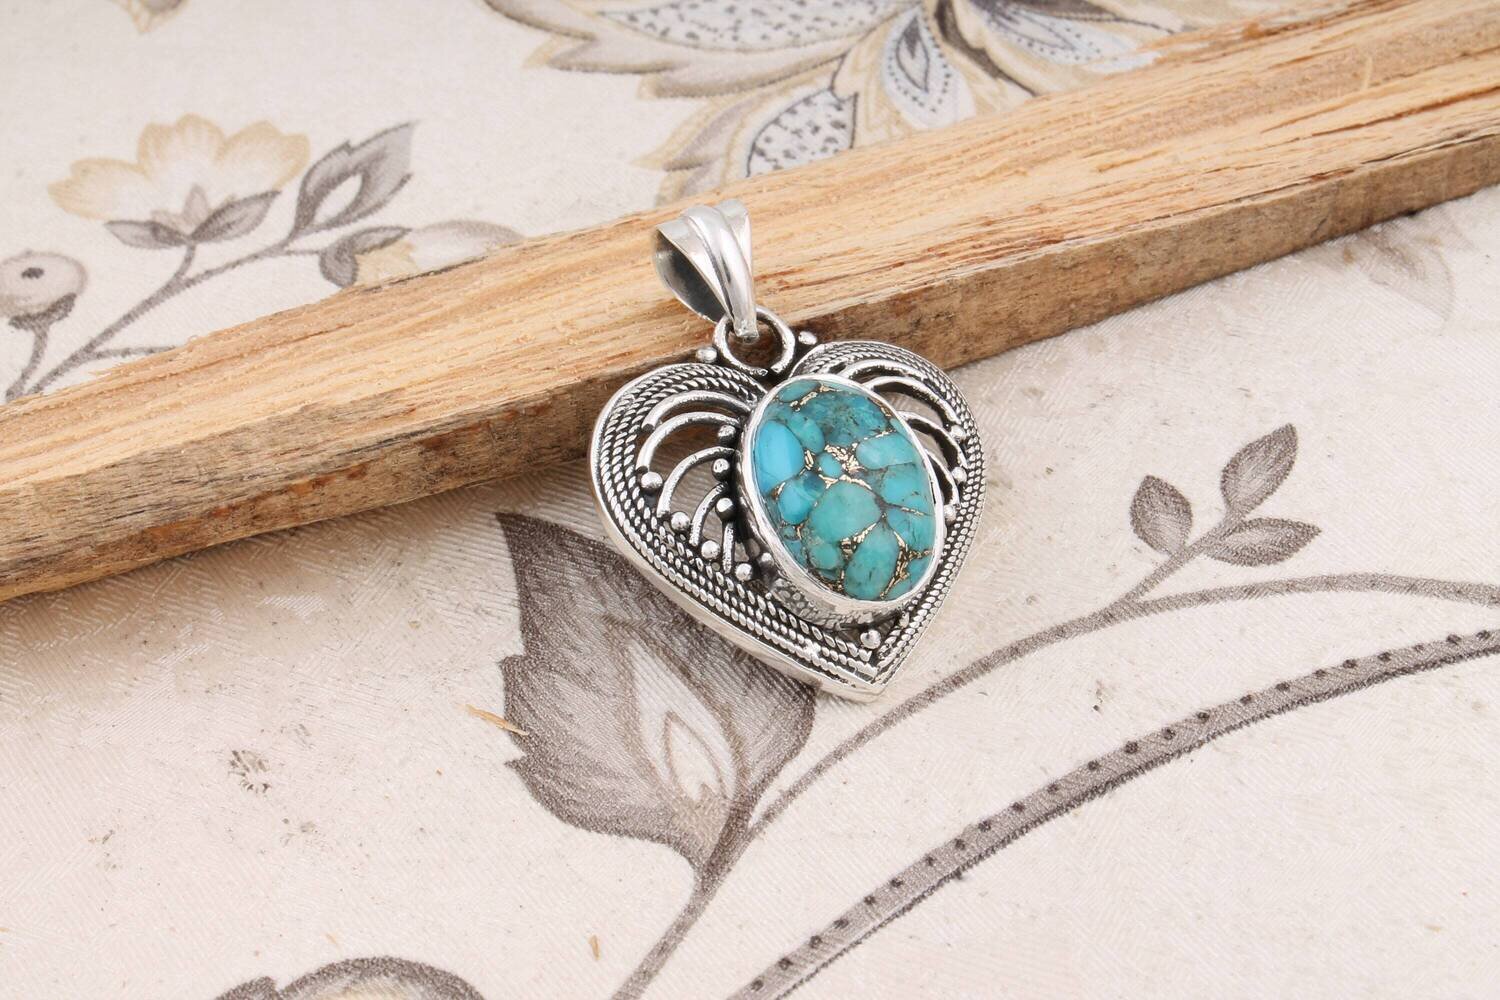 Heart Shape Pendant With Turquoise Gemstone Pendant 925-Sterling Solid Silver Pendant,Lovely Gift Item Pendant BohoBestseller2021Etsy